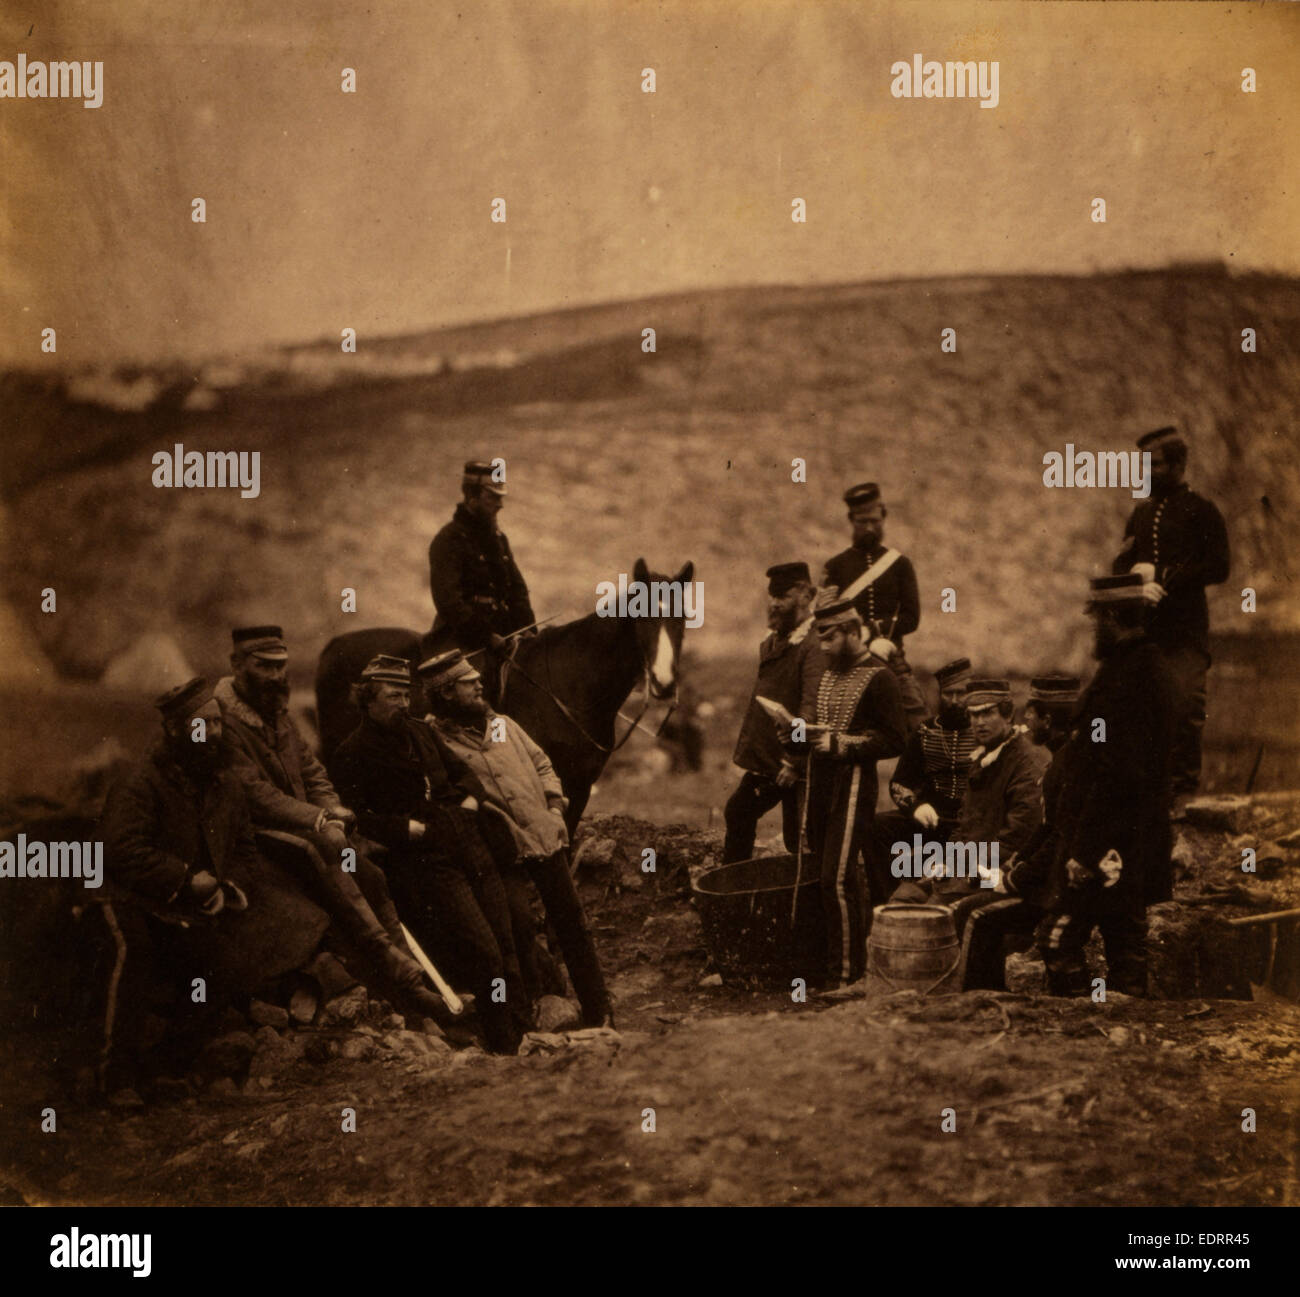 Gruppe von Offizieren, 8. Husaren, Krimkrieg, 1853-1856, Roger Fenton historischen Krieg Kampagne Foto Stockfoto